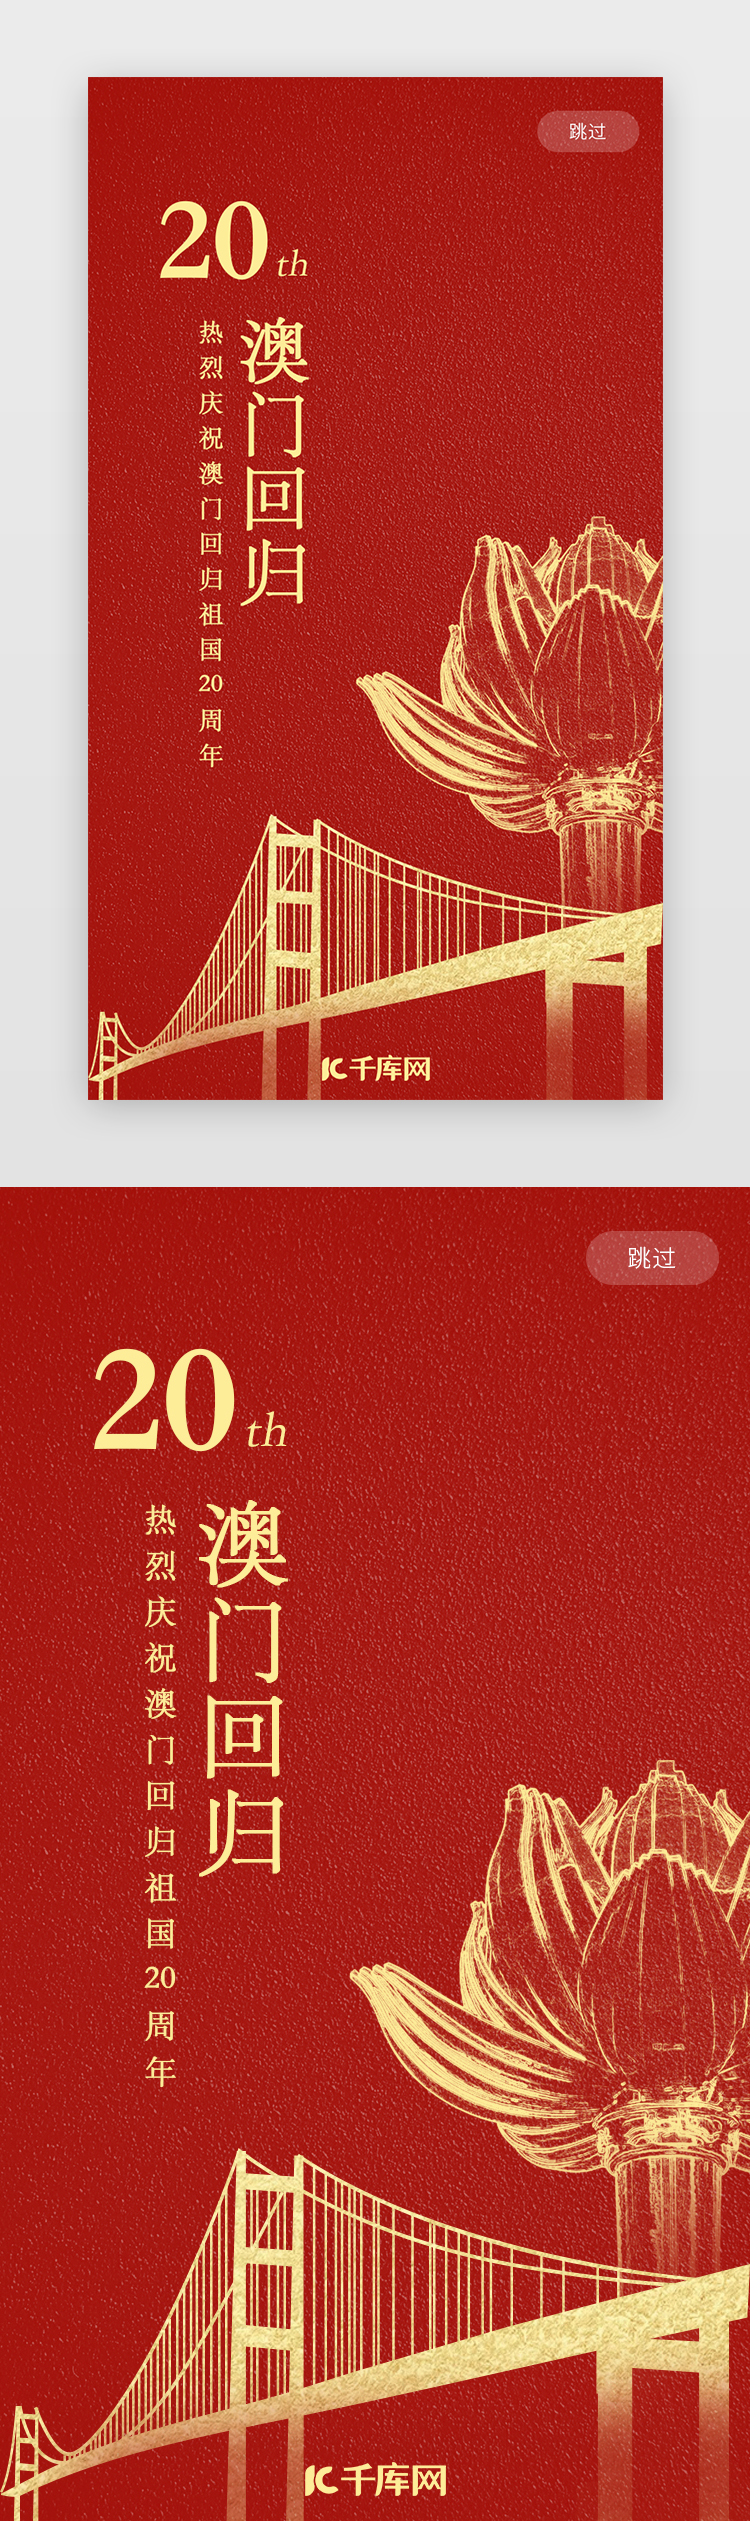 红色澳门回归20周年app闪屏图片